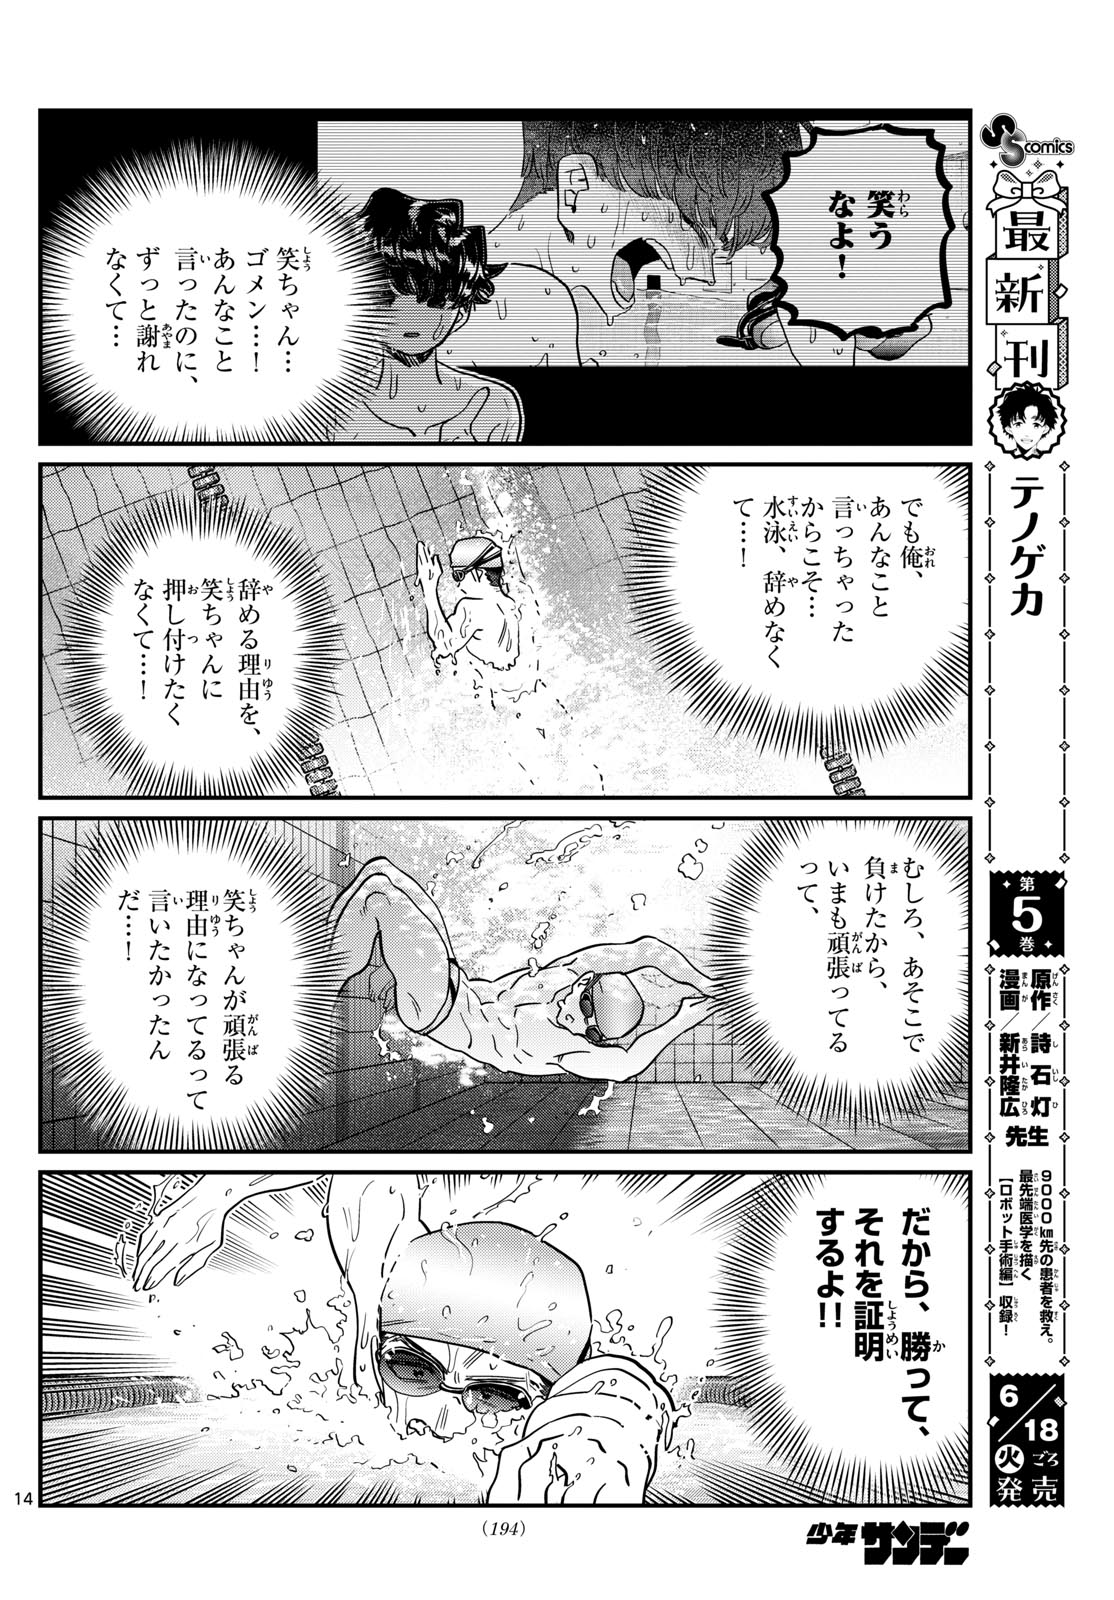 Komi-san wa Komyushou Desu - Chapter 461 - Page 14